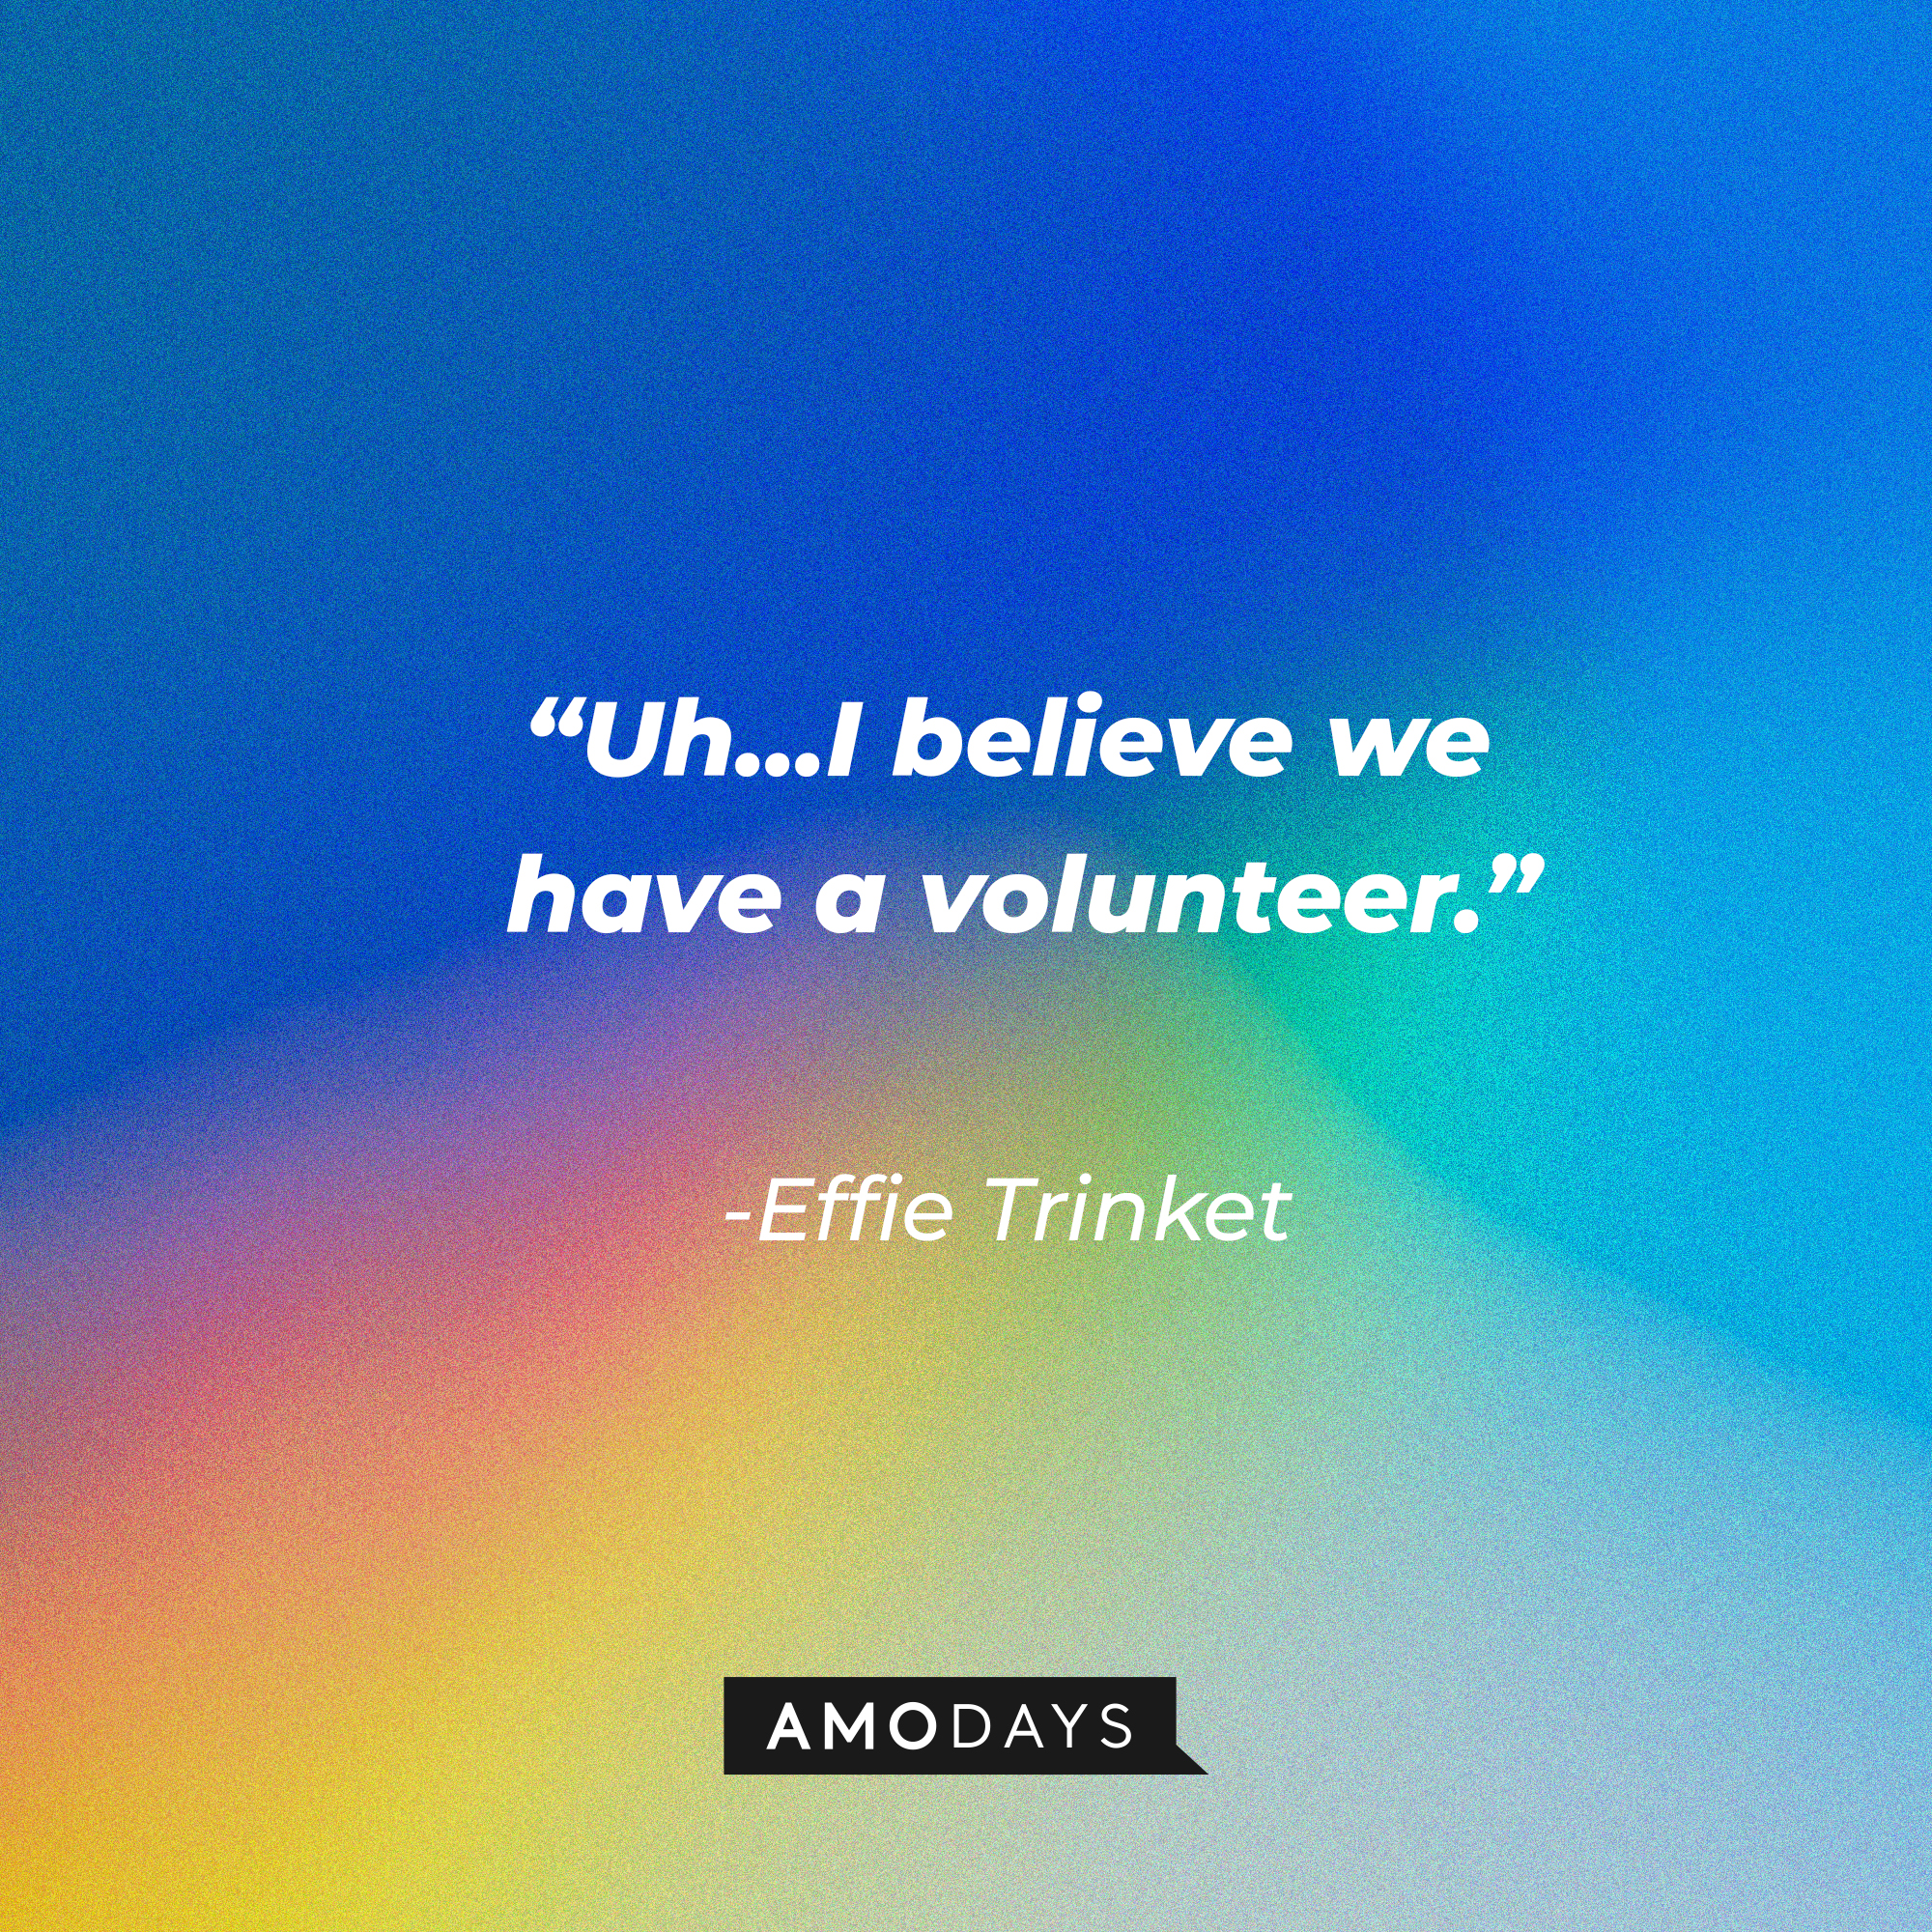 Effie Trinket's quote: “Uh...I believe we have a volunteer.” | Source: AmoDa